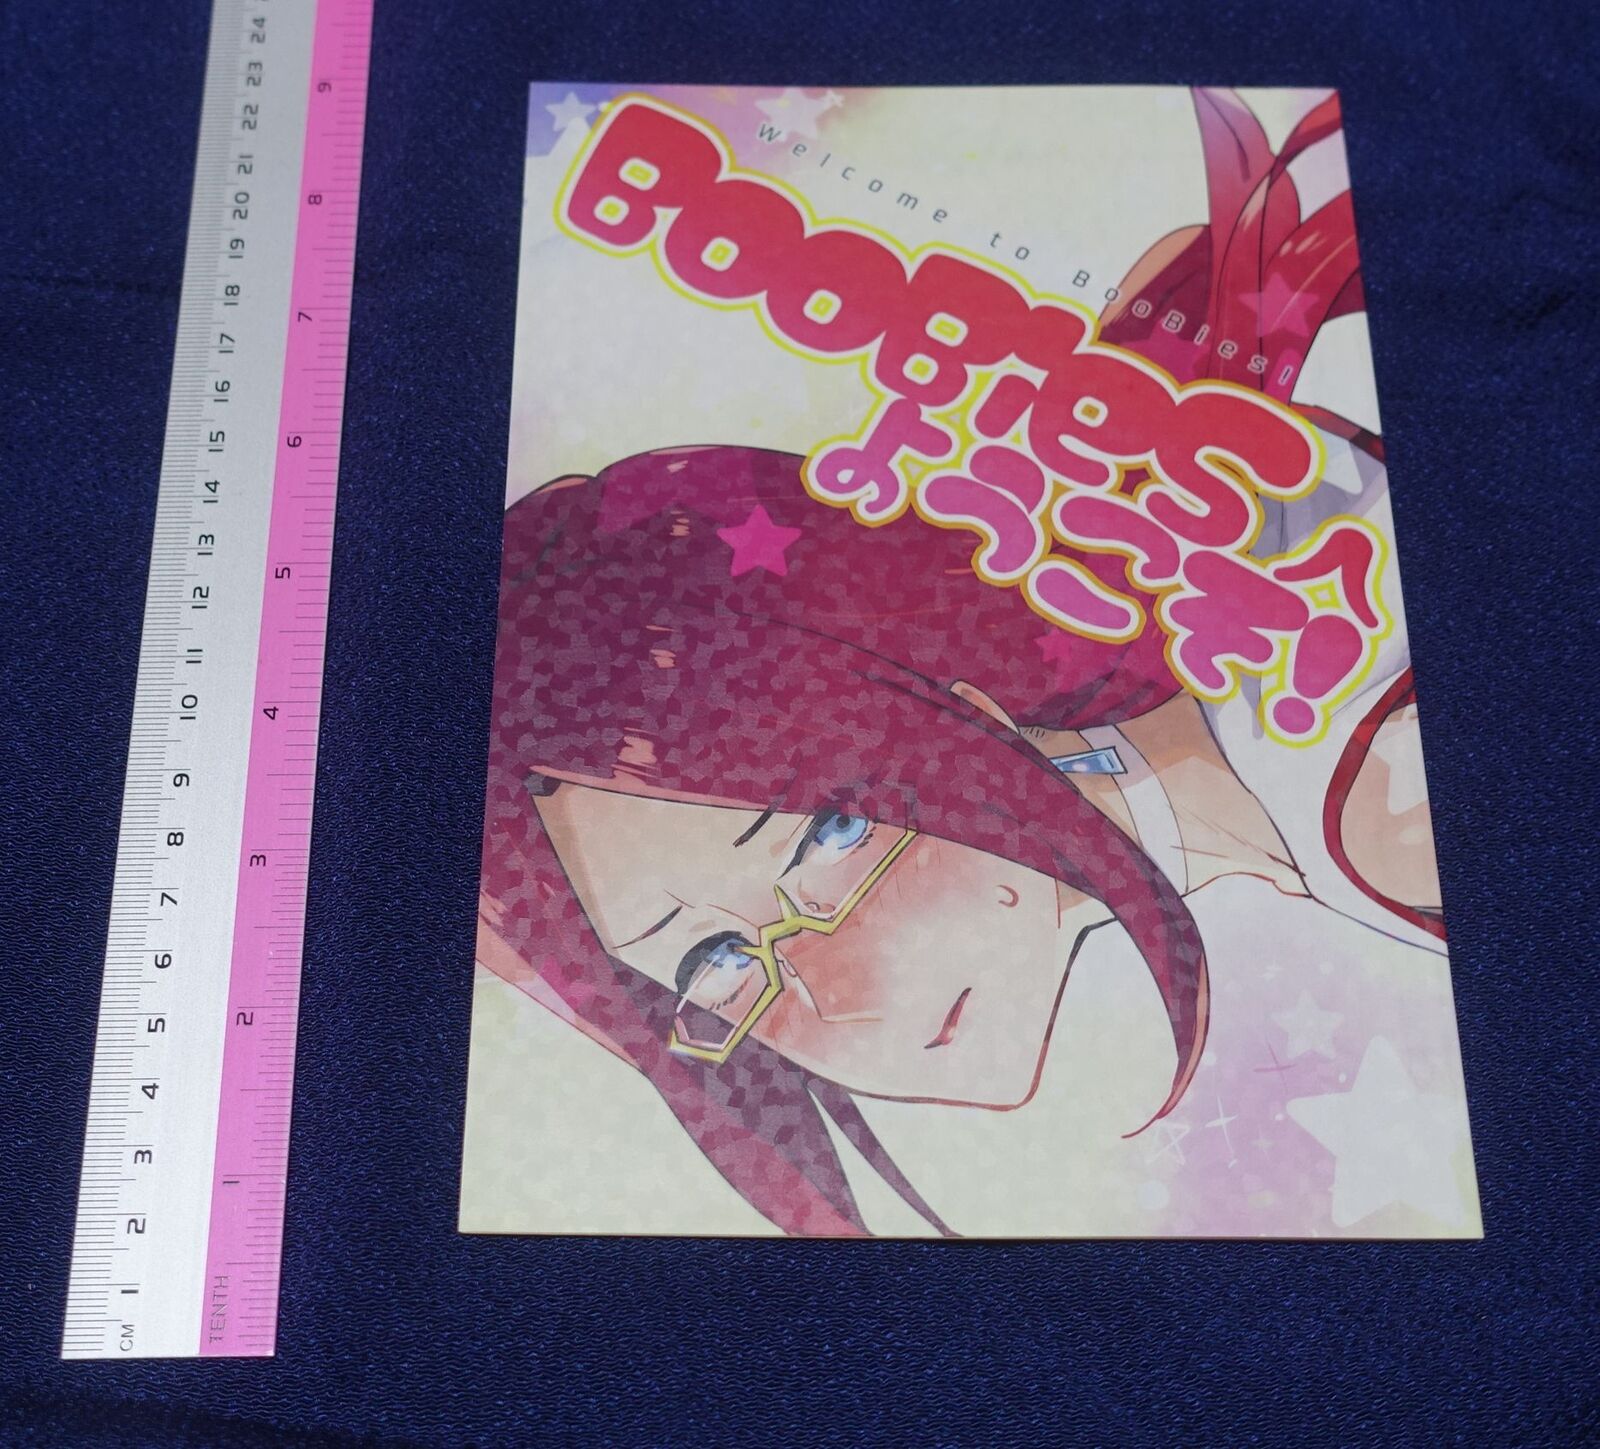 Buchimake Matsuri Space Dandy Fan Made Comic Welcom to BooBies! 